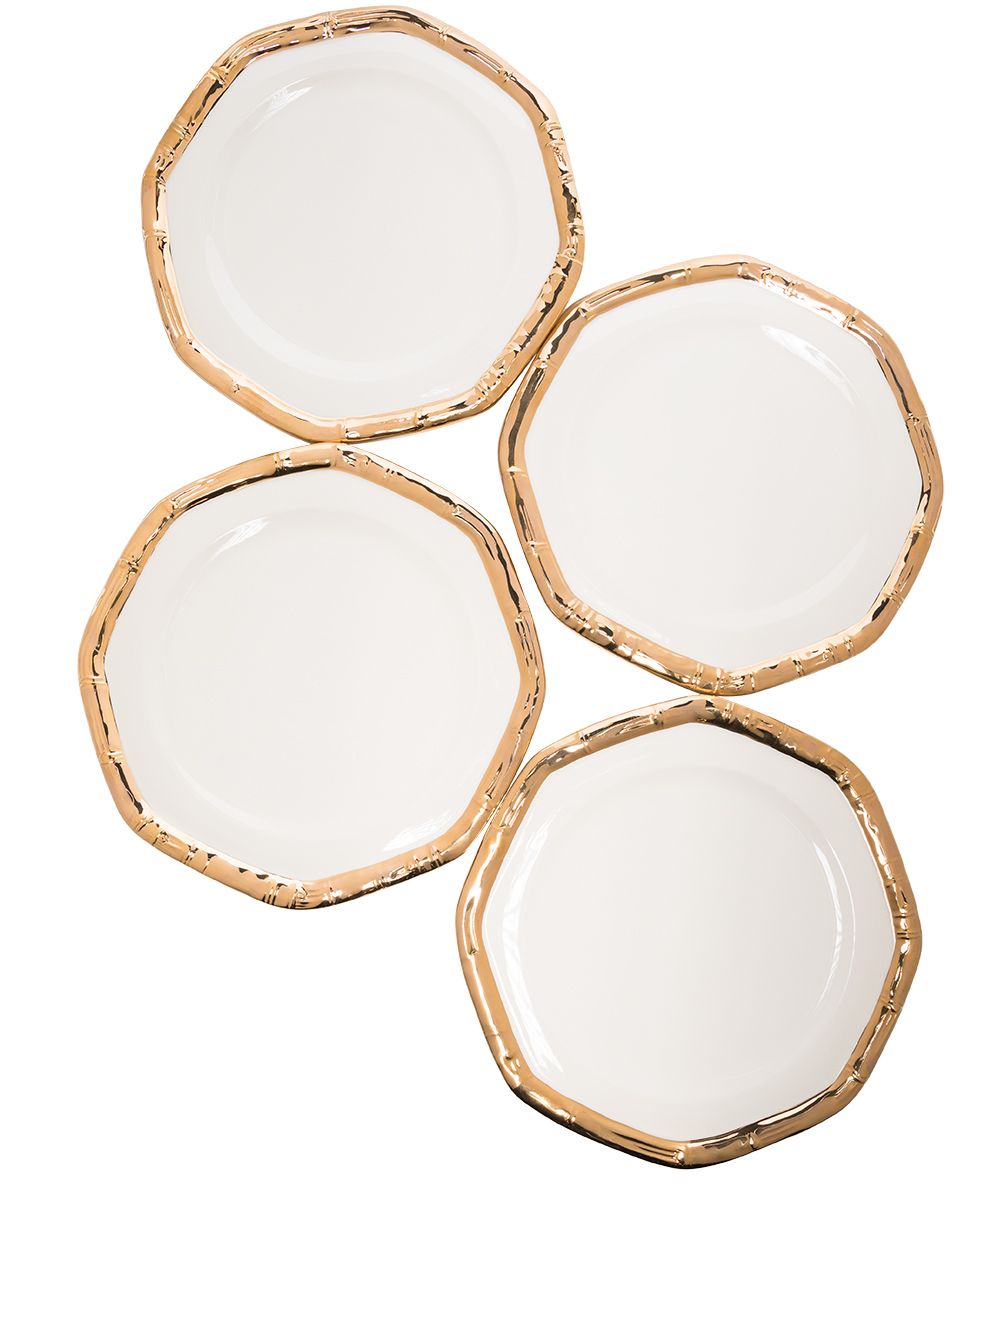 фото Les ottomans набор bamboo из четырех керамических тарелок (27 см)